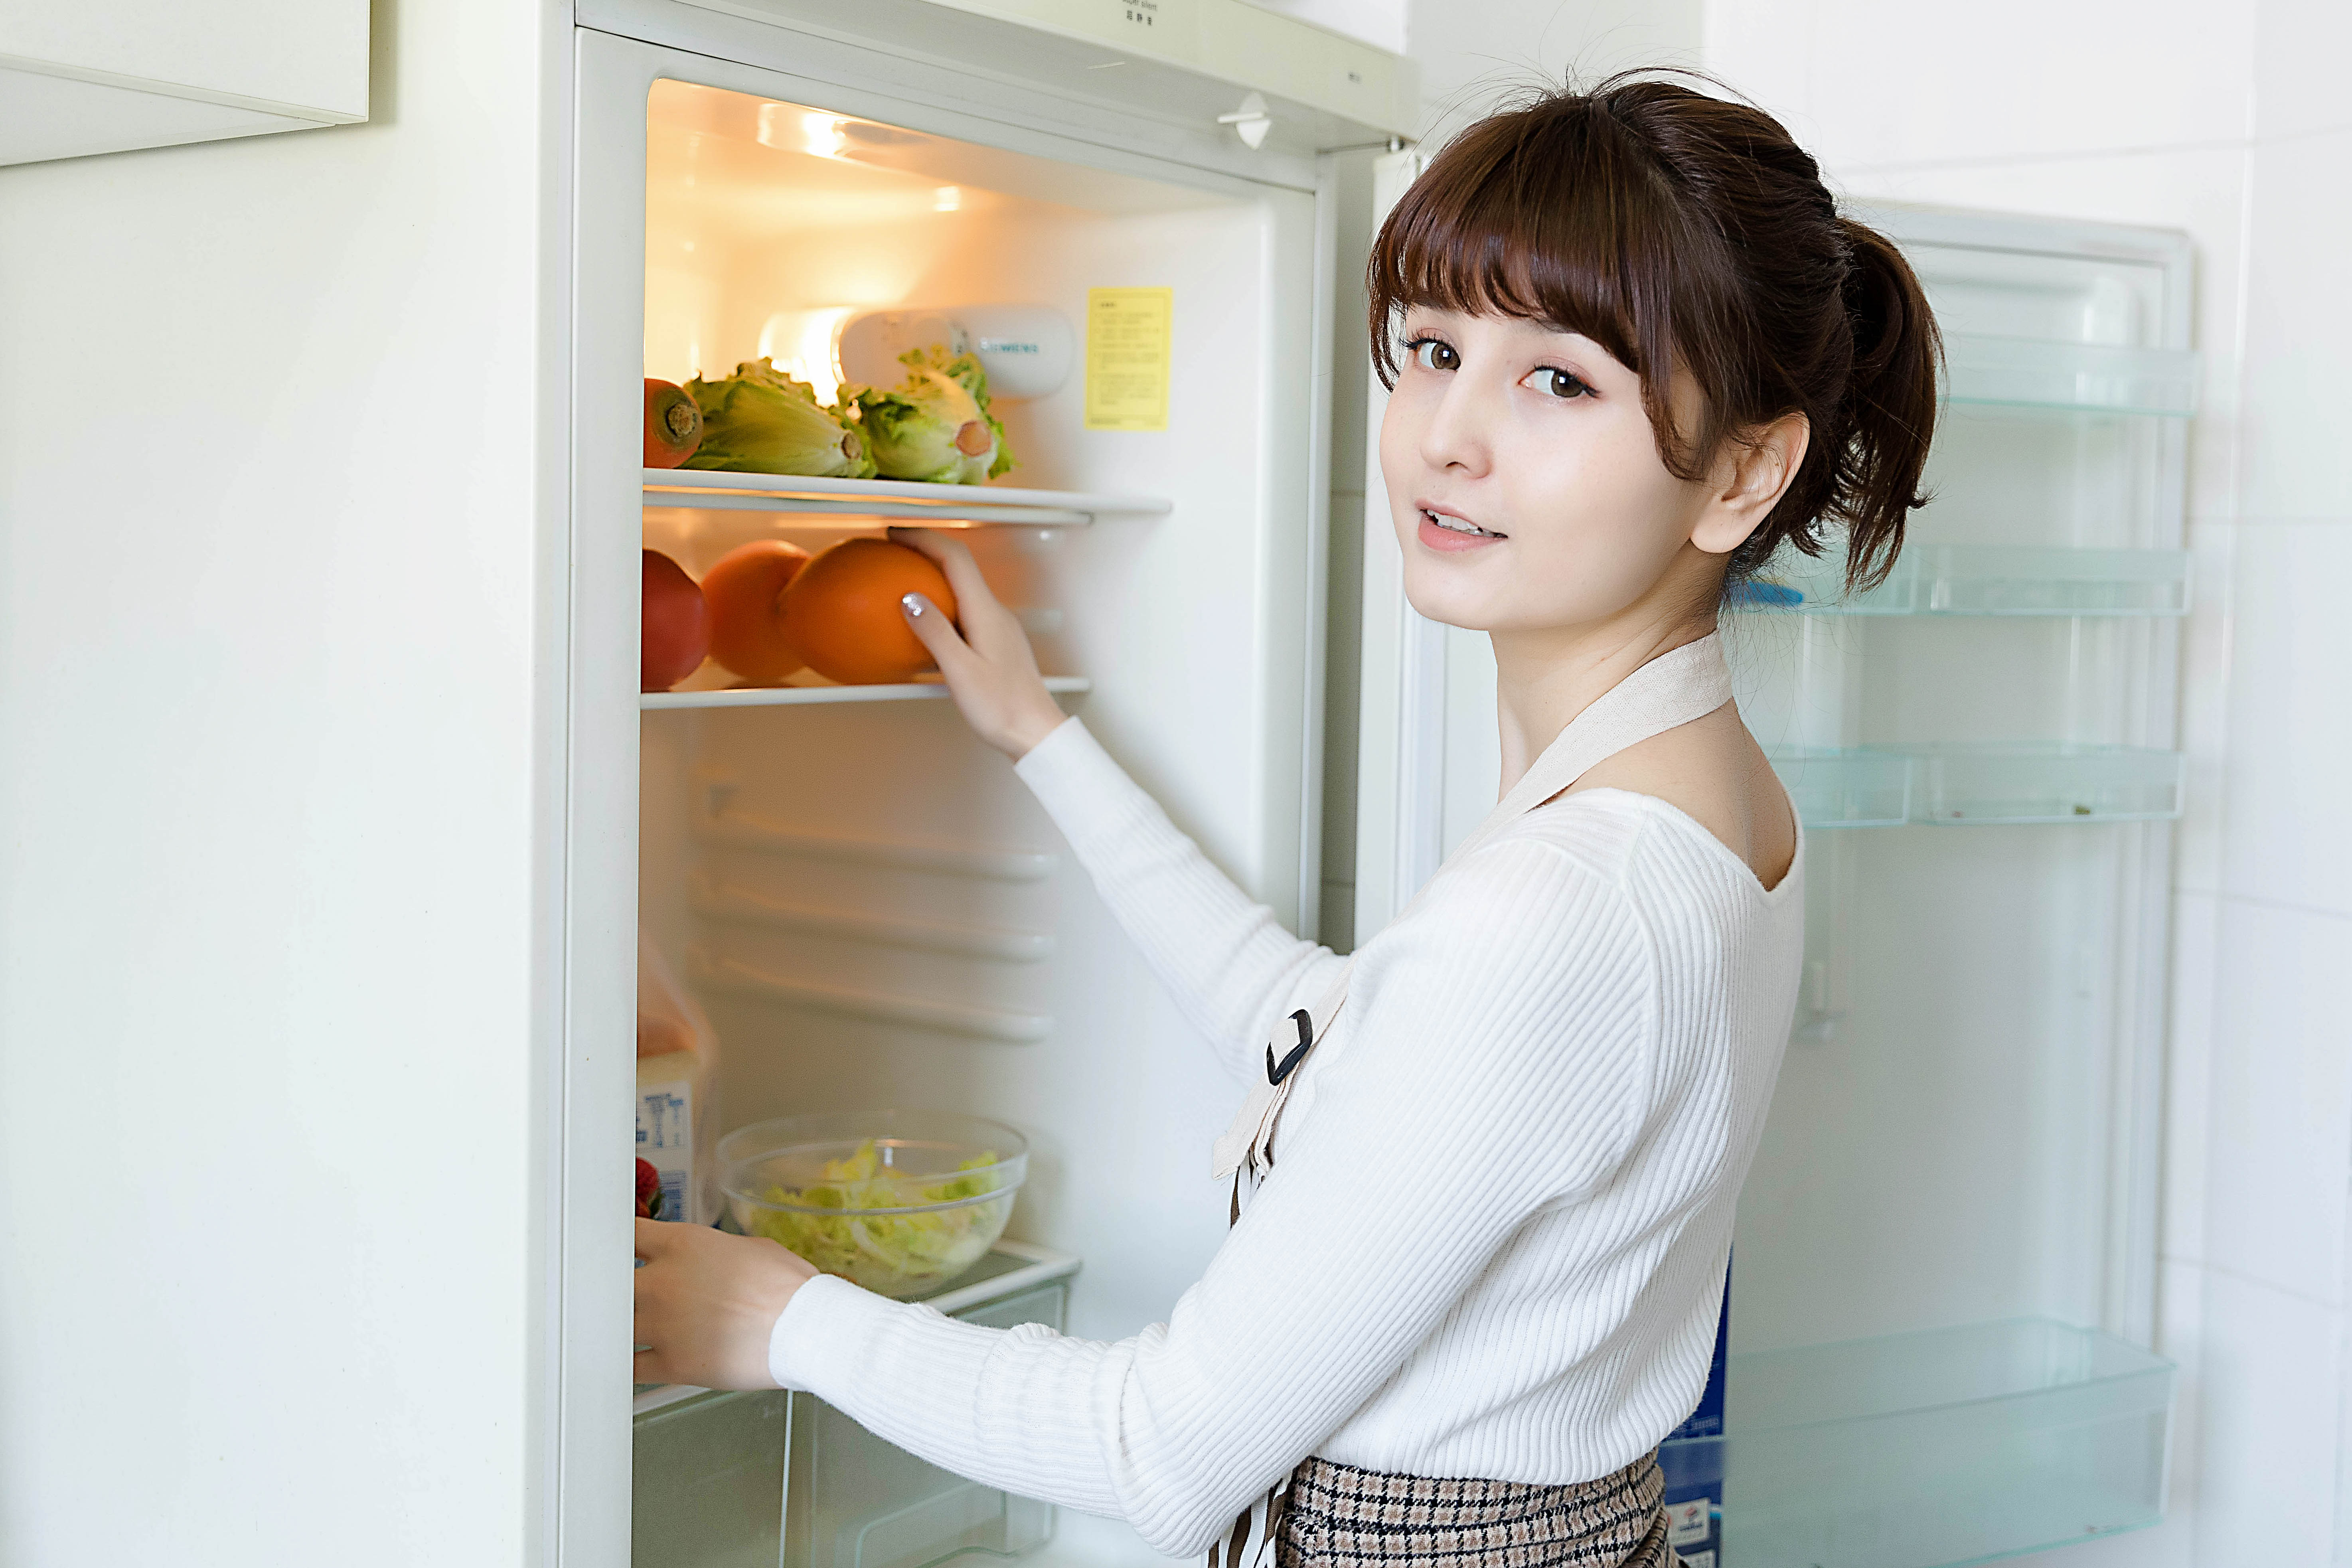 冰箱不适合放厨房？师傅说很多人不懂，现在才了解。